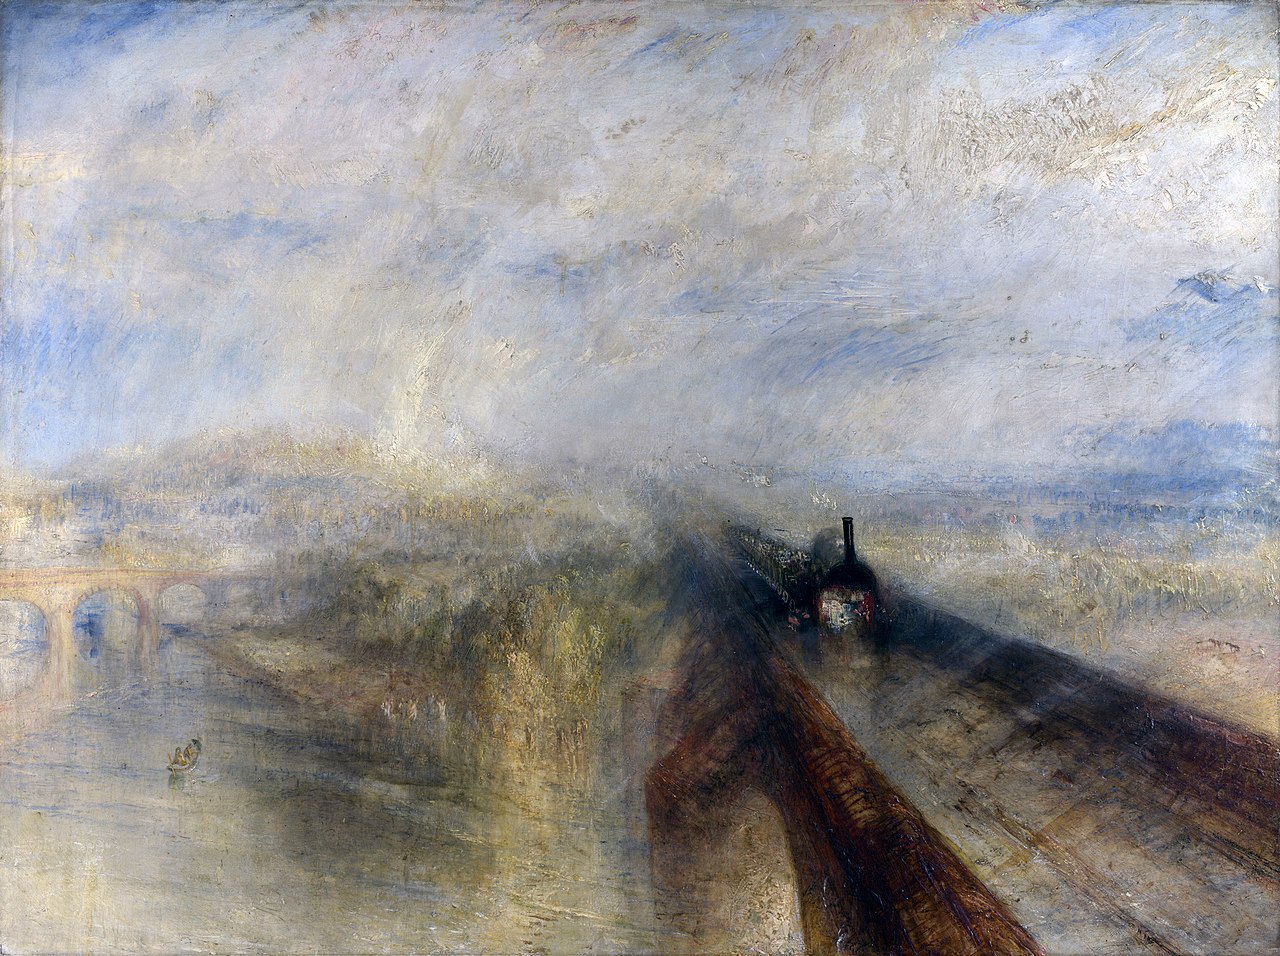 Уильям Тёрнер. Дождь, пар и скорость. Великая западная железная дорога. 1844